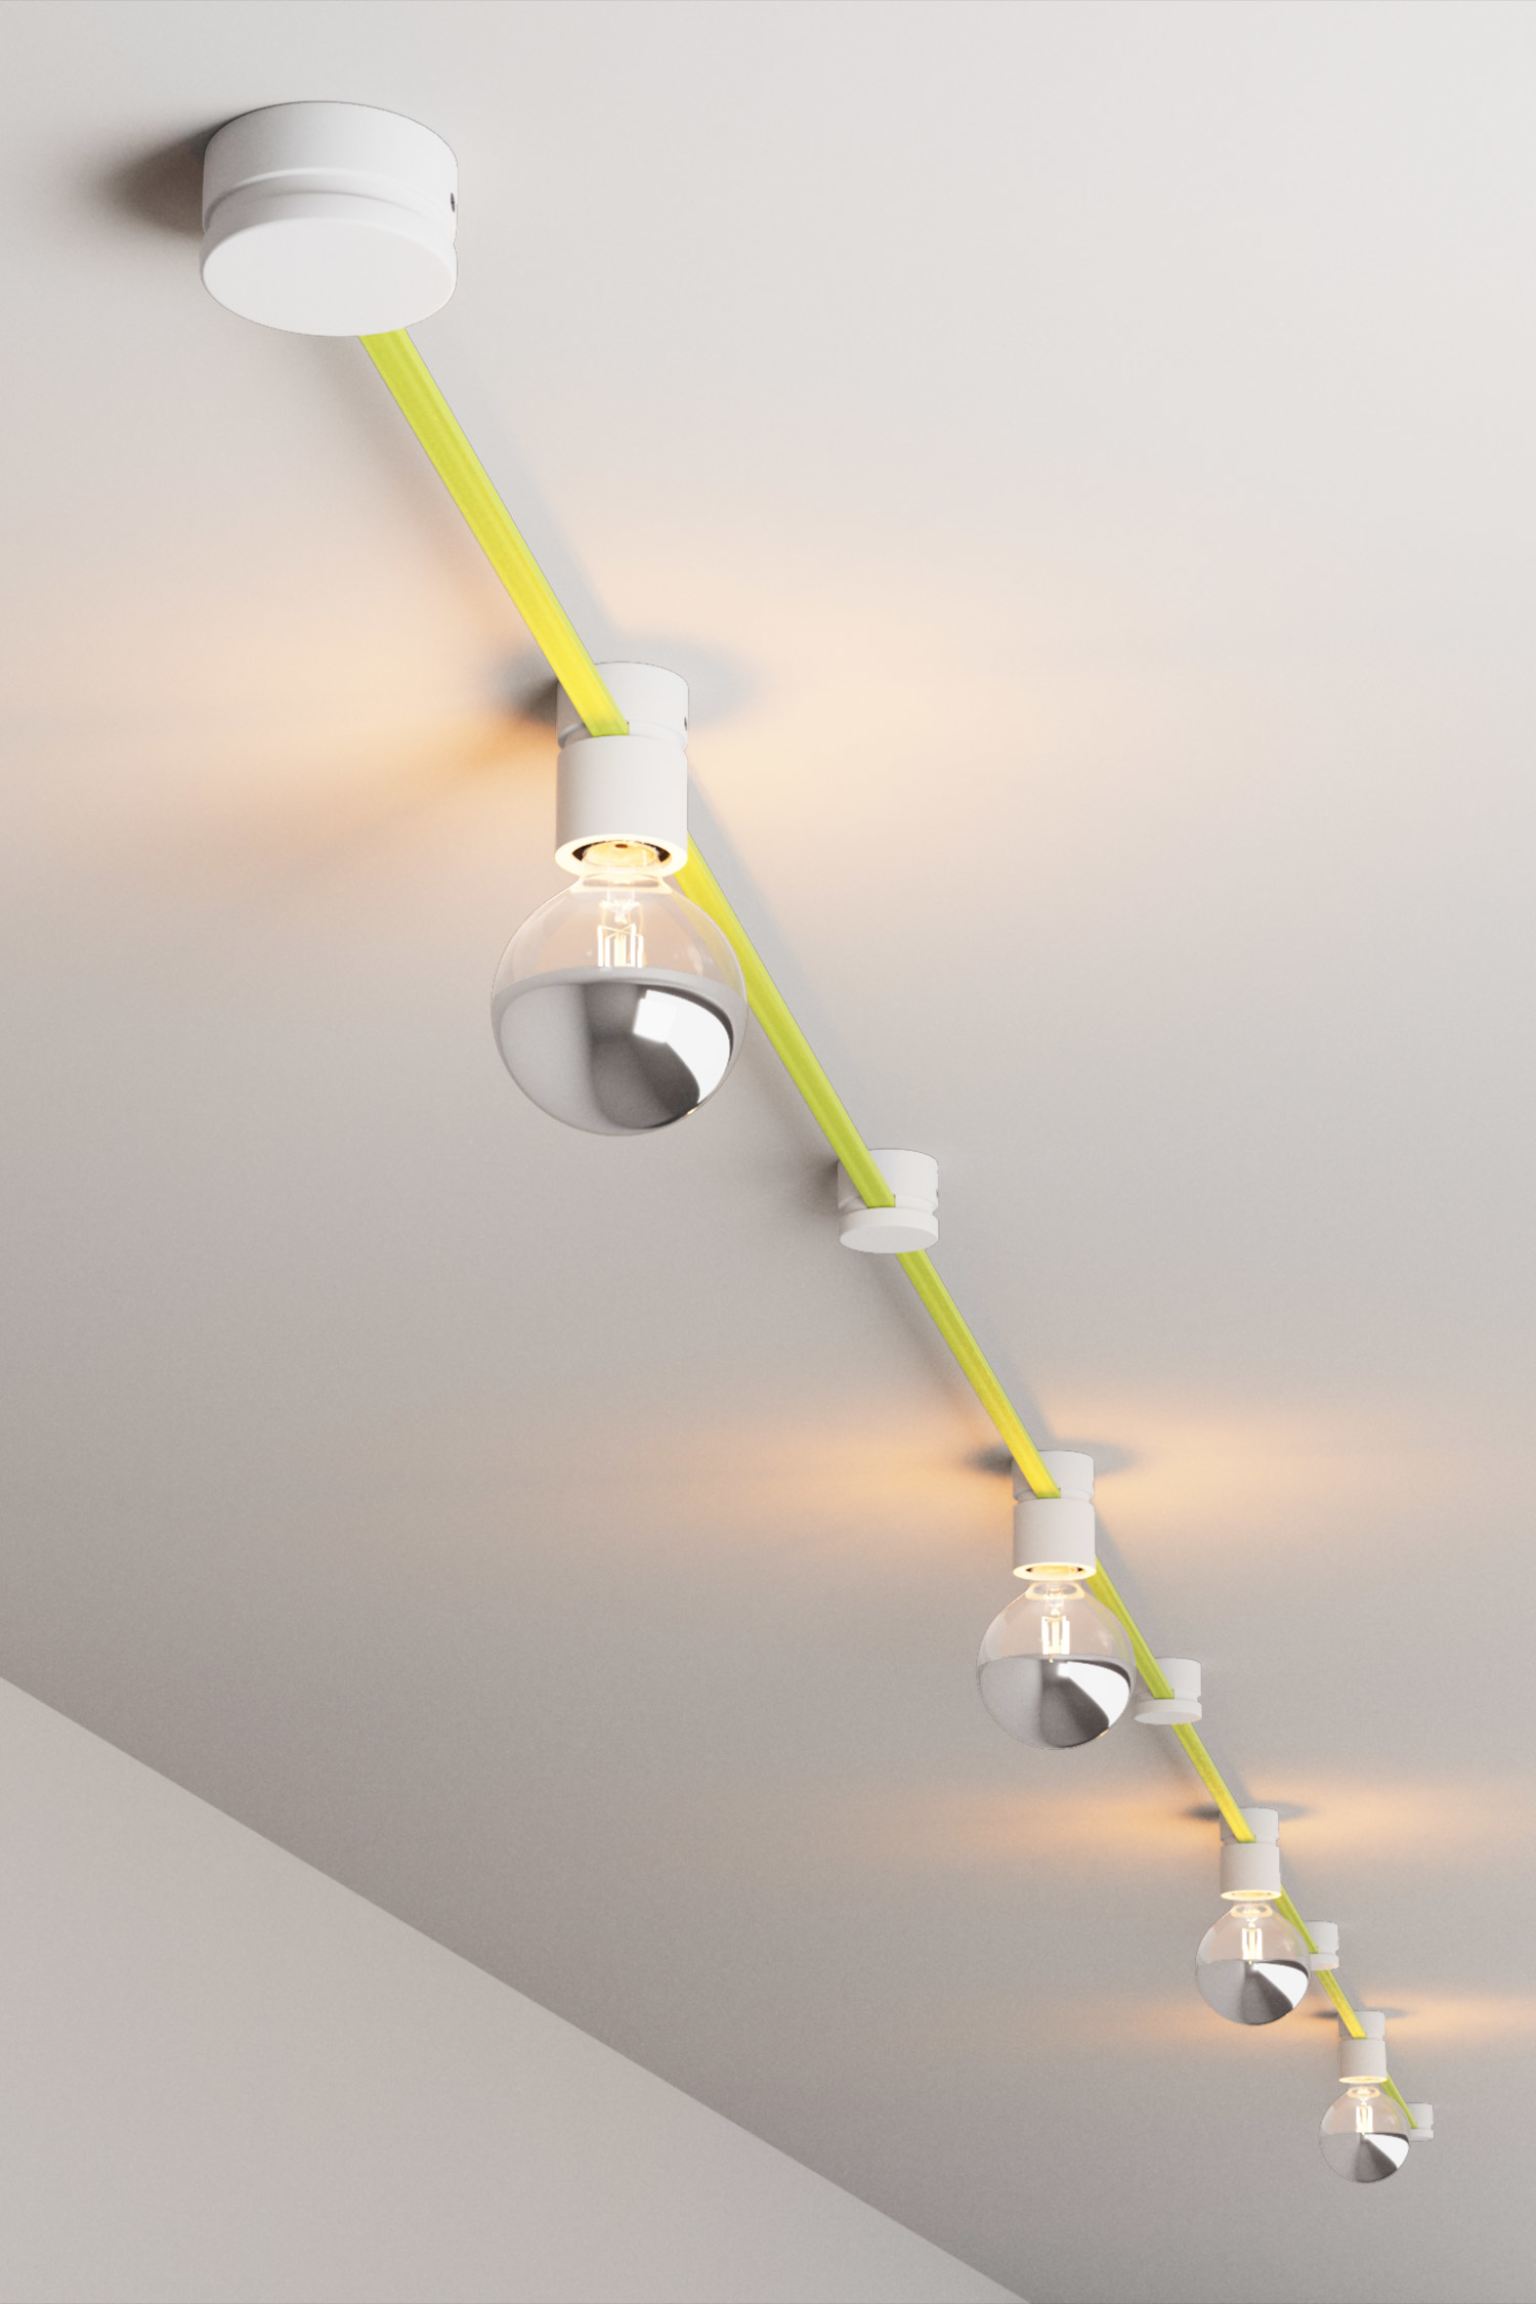 светильник настенный потолочный cl530520 смит Потолочный светильник Creative Cables Personalized, флуоресцентно-желтый/белый